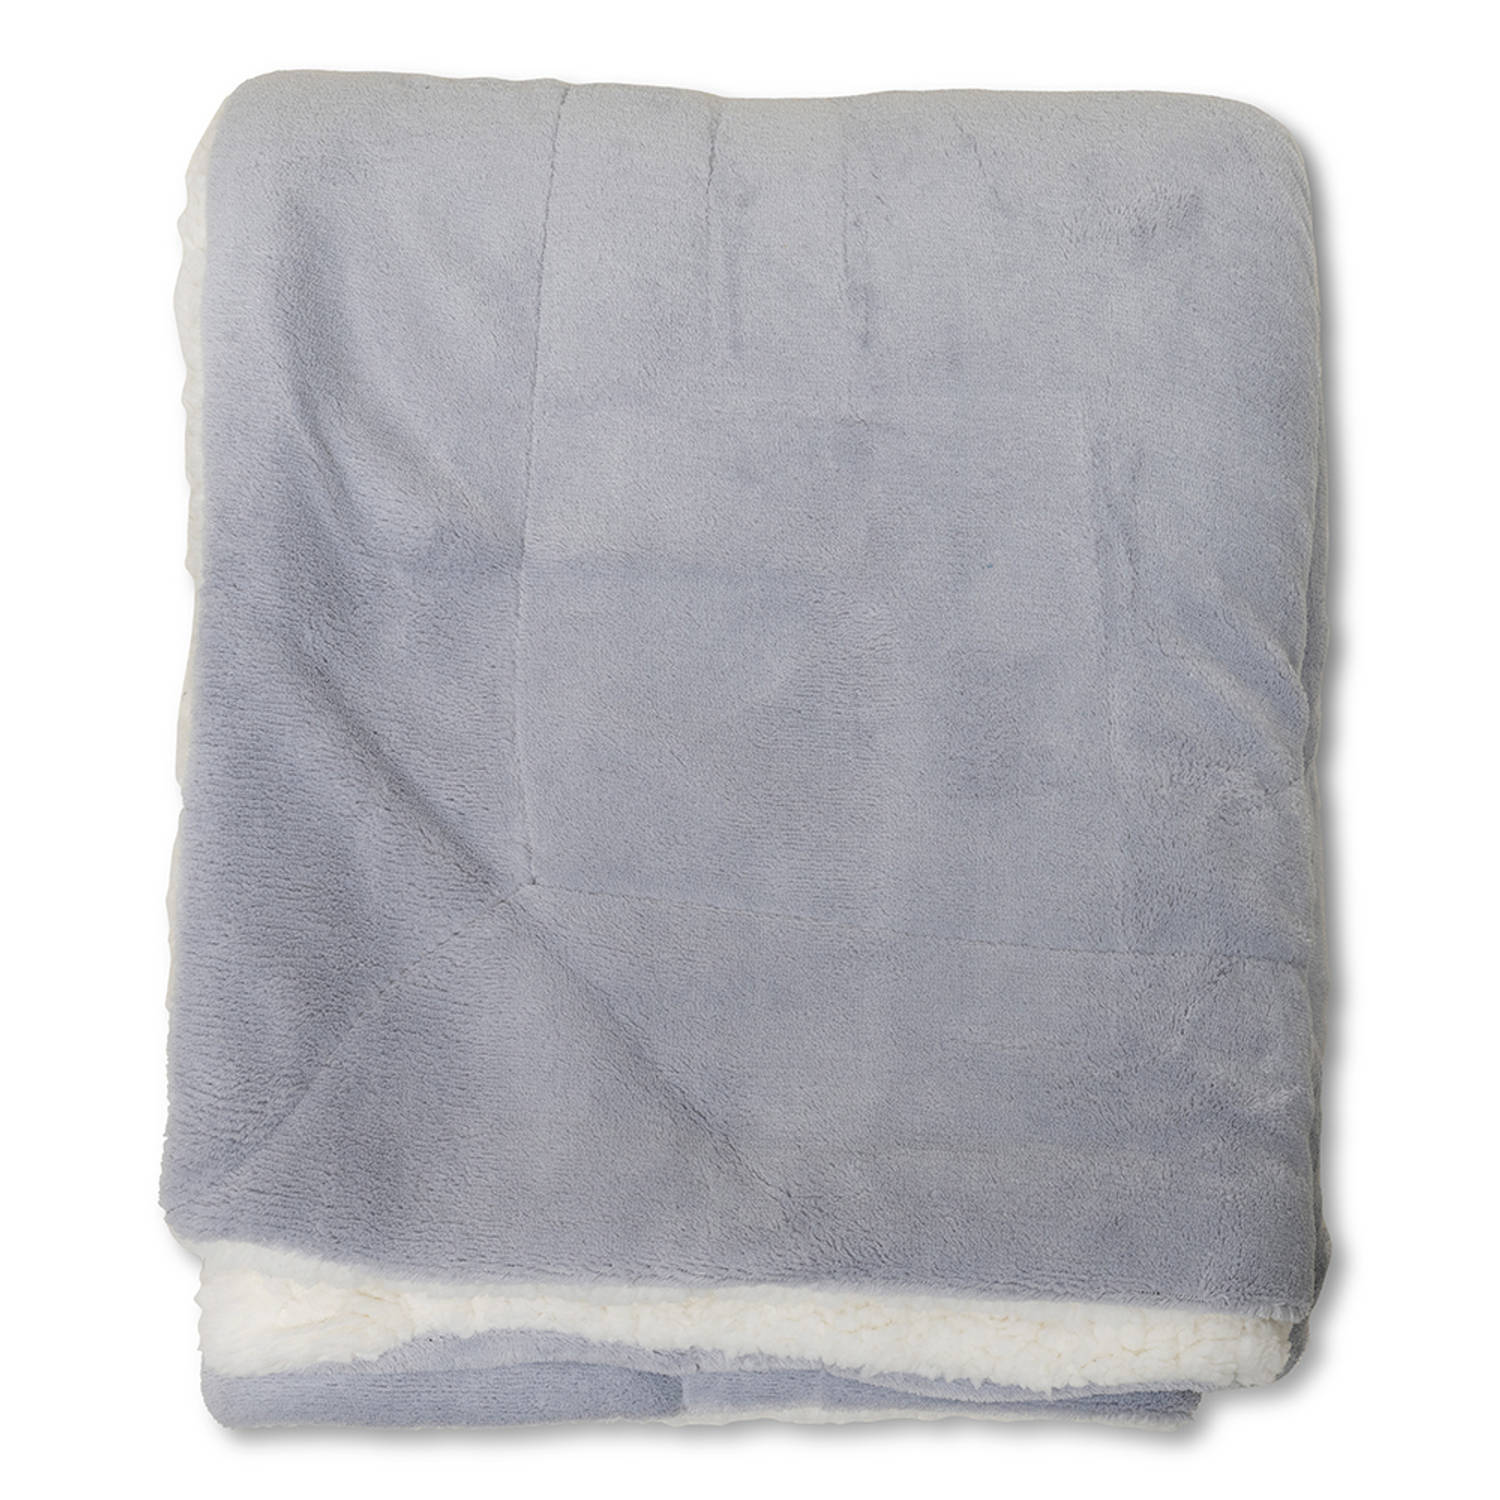 Wicotex-Plaid-deken-fleece plaid Espoo grijs 150x200cm met witte sherpa binnenkant-Zacht en warme Fl